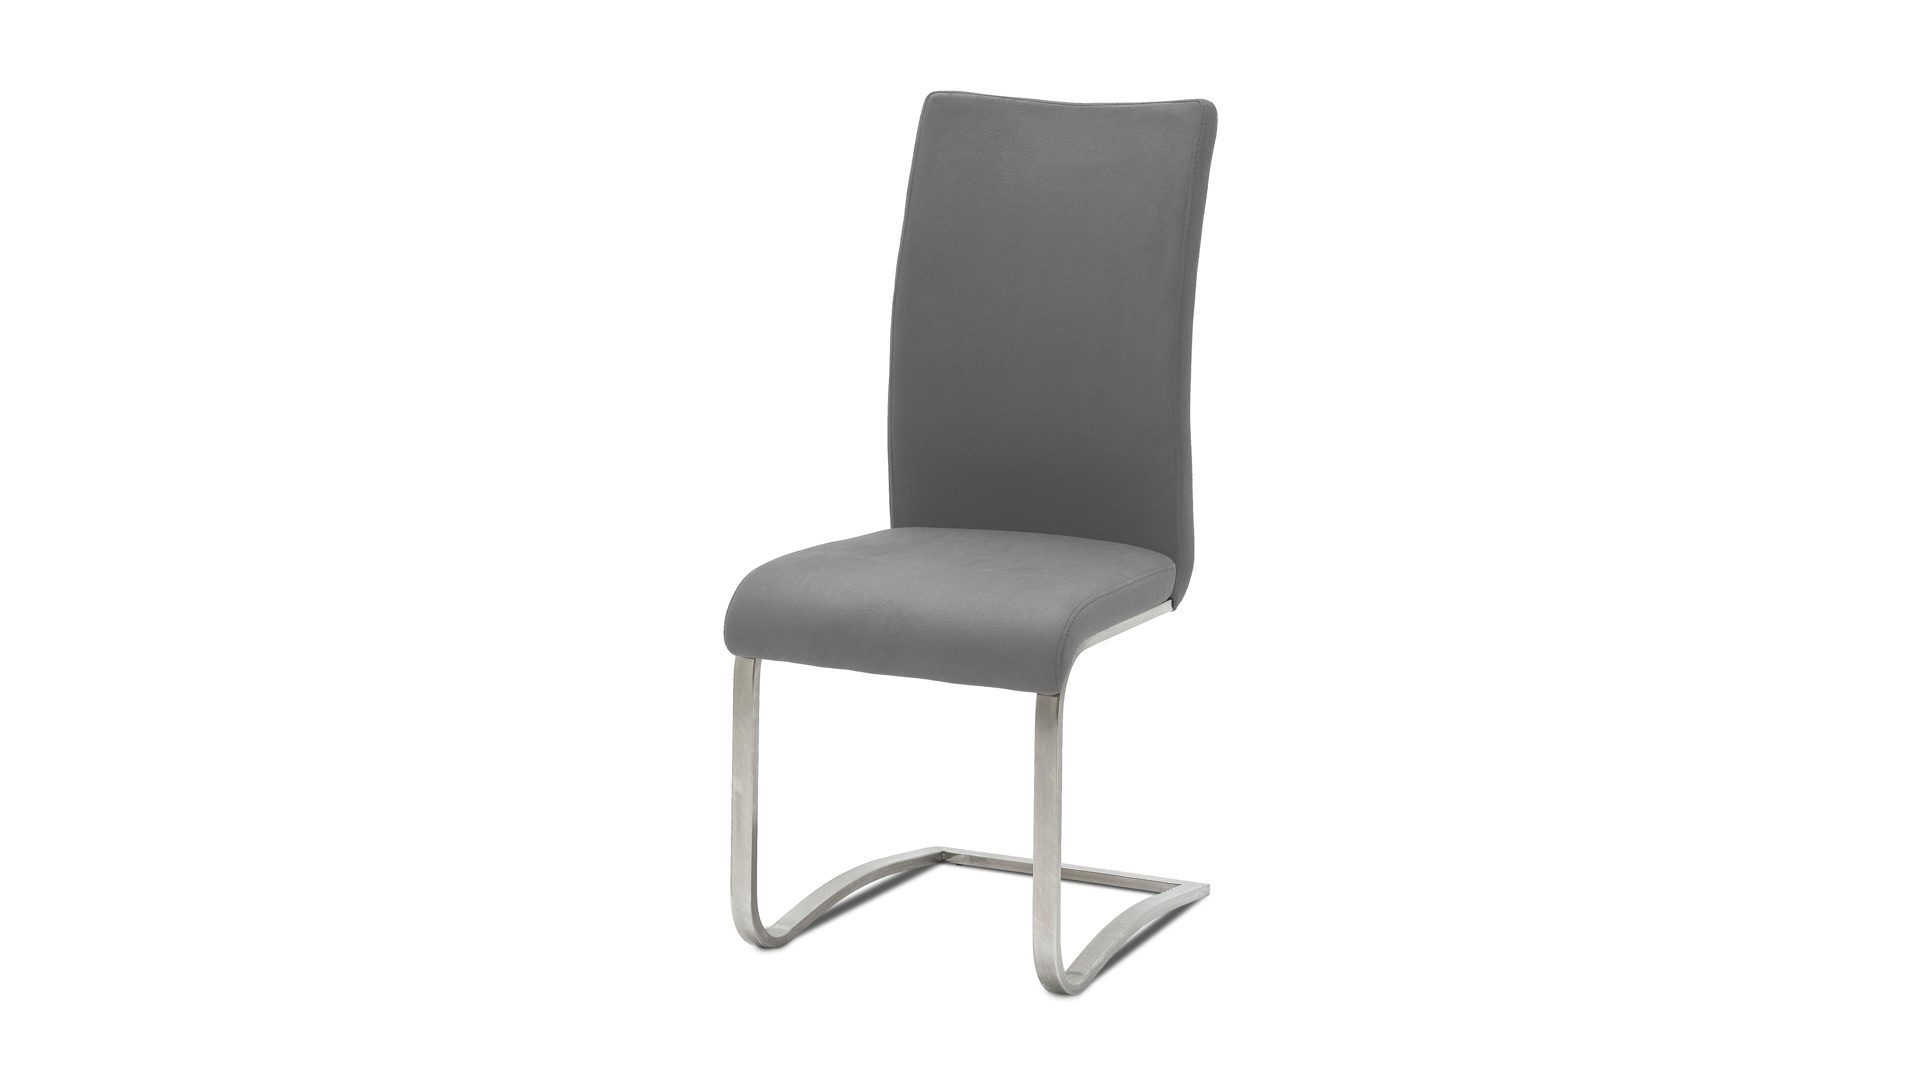 Schwingstuhl Mca furniture aus Leder in Grau Leder-Schwingstuhl, ein klassisches Sitzmöbel graues Leder ELG & Edelstahl